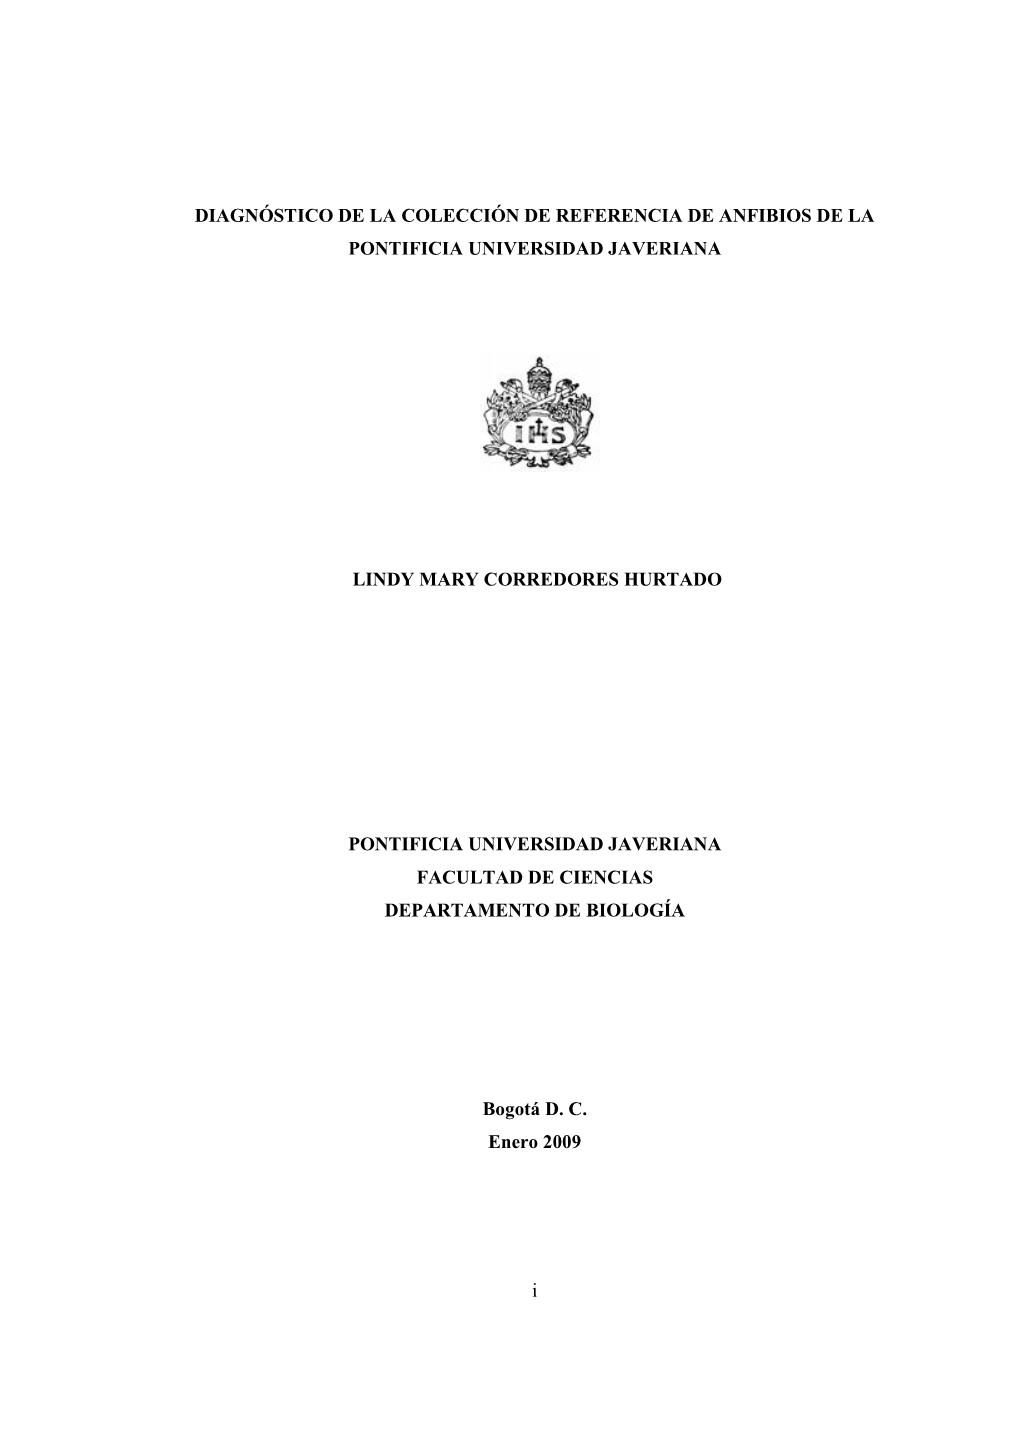 Diagnóstico De La Colección De Referencia De Anfibios De La Pontificia Universidad Javeriana